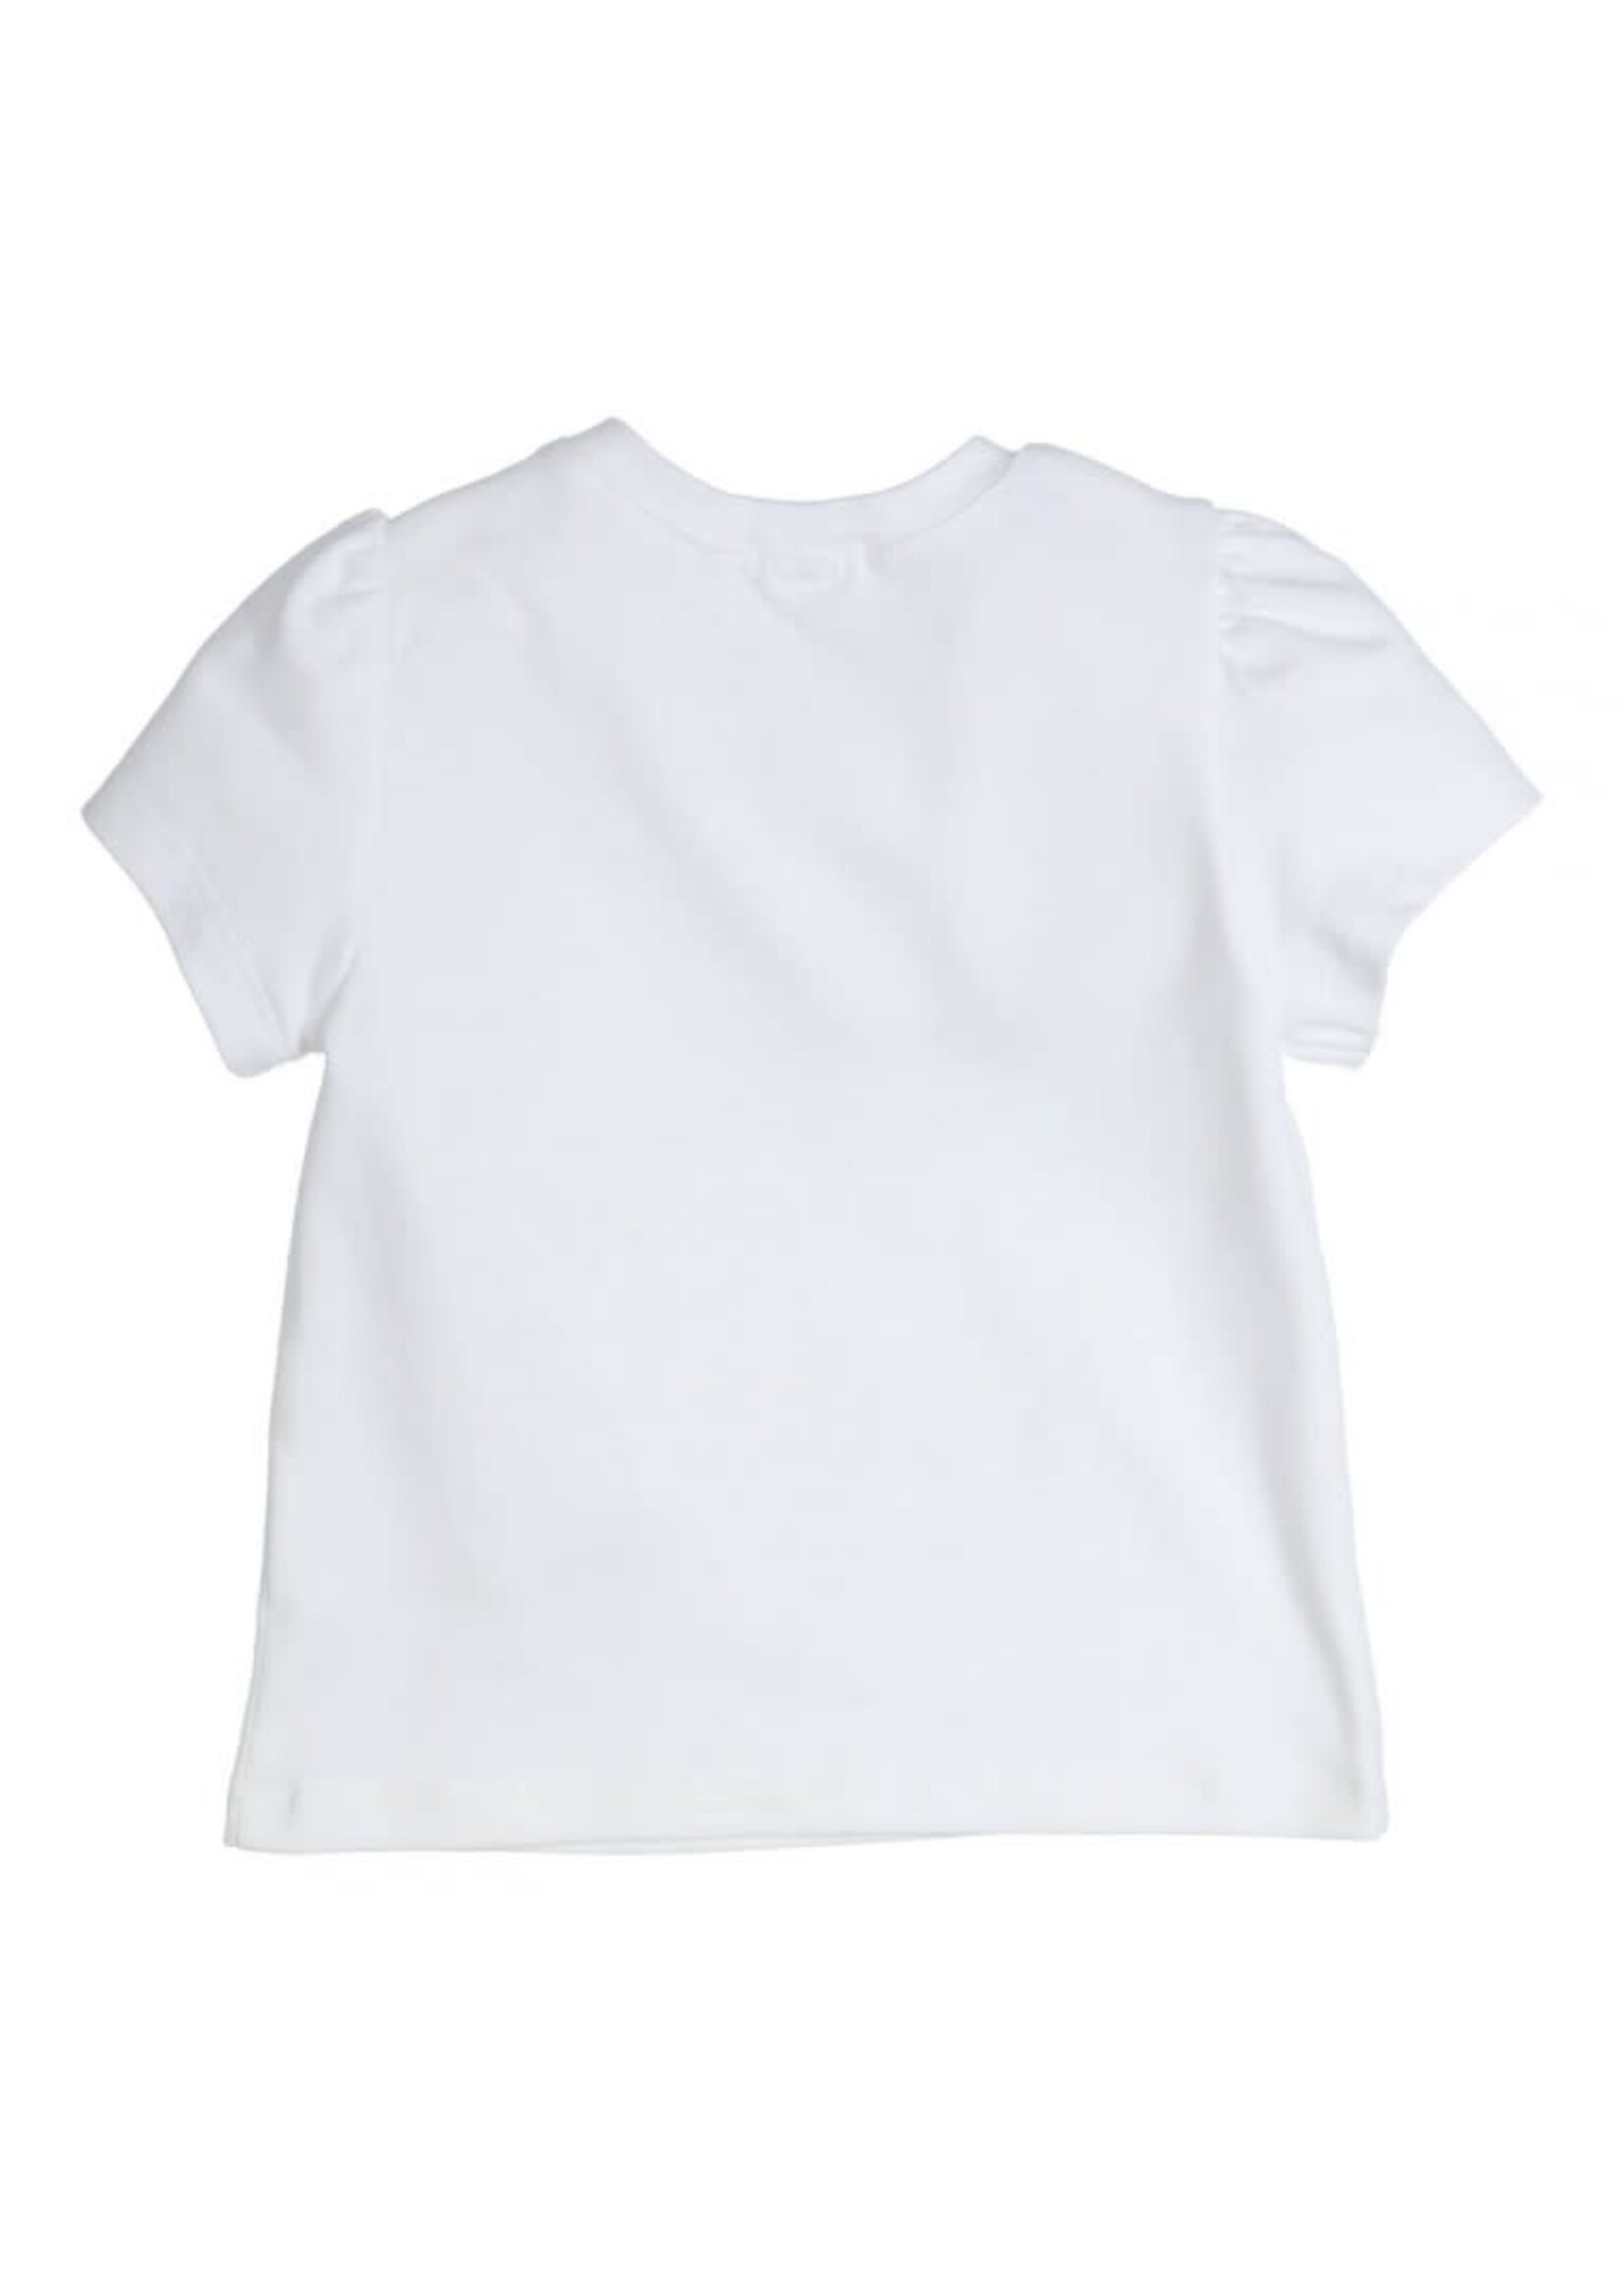 GYMP GYMP T-shirt Aerobic White 353-4361-10